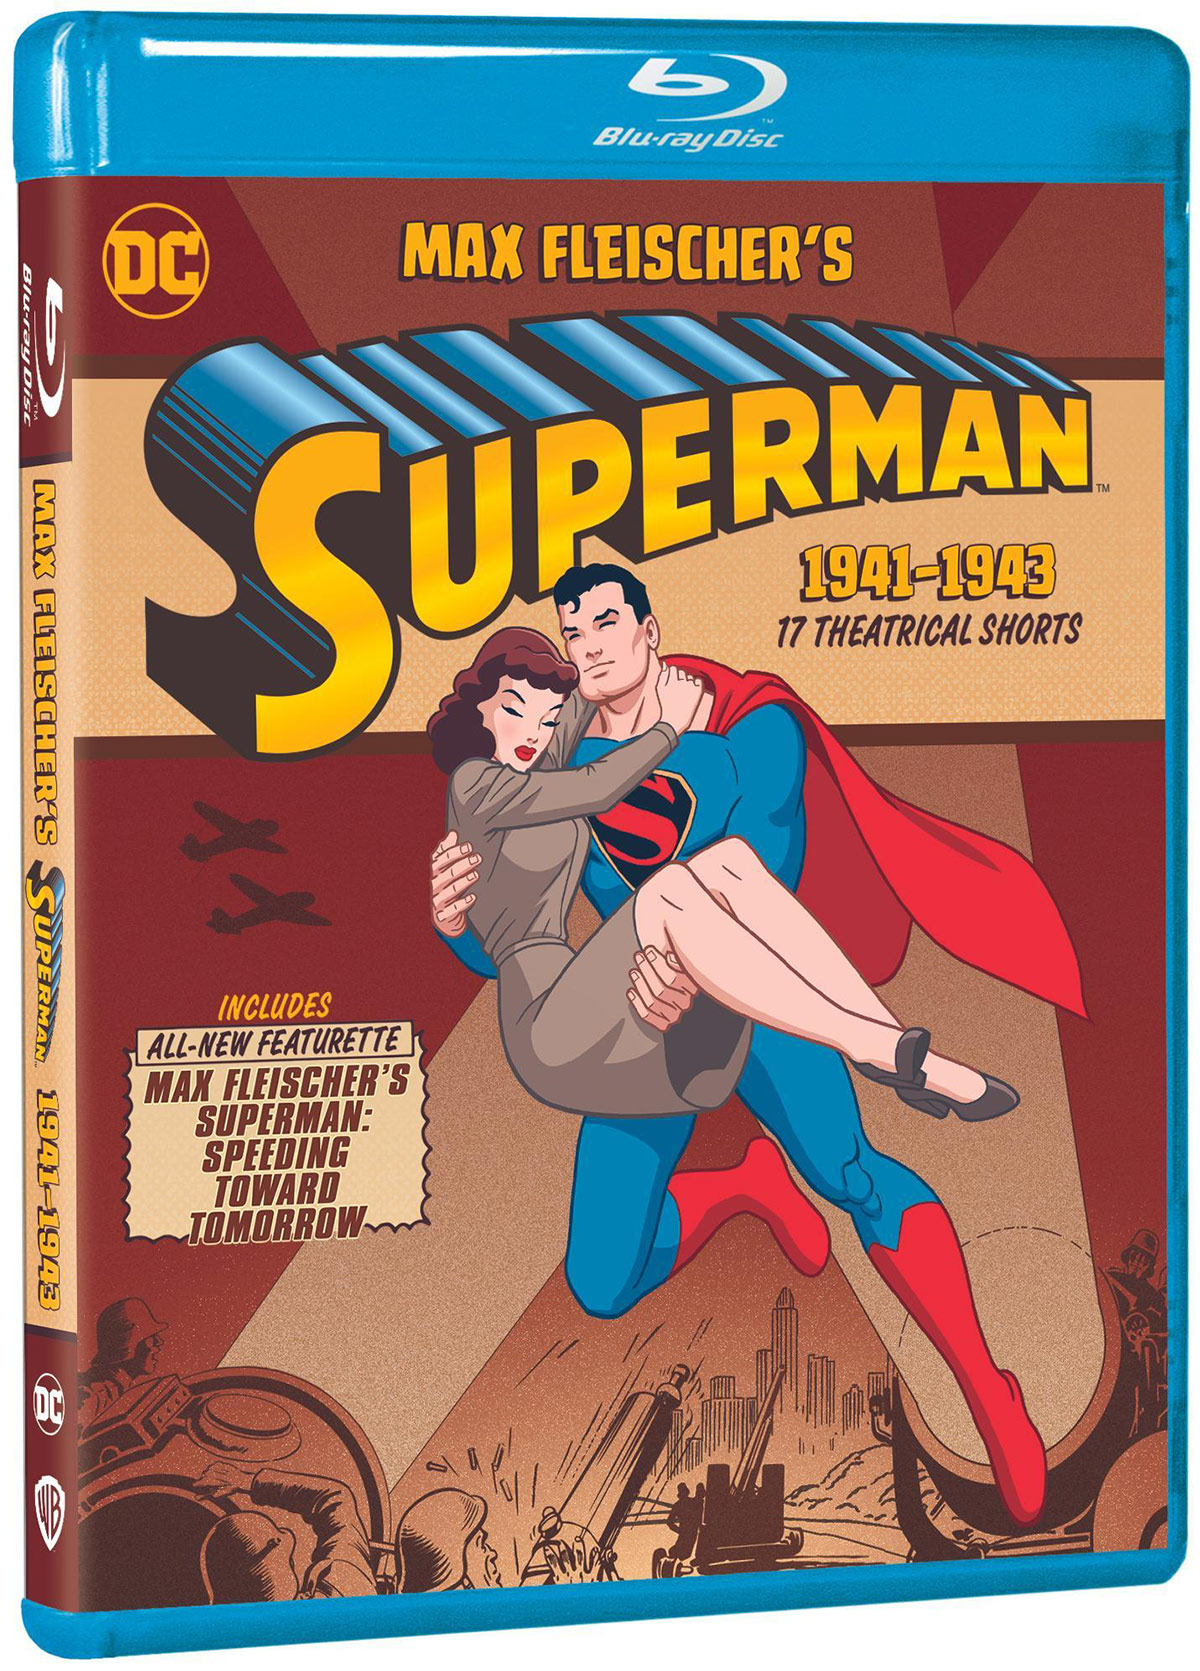 Max Fleischer's Superman on Blu-ray